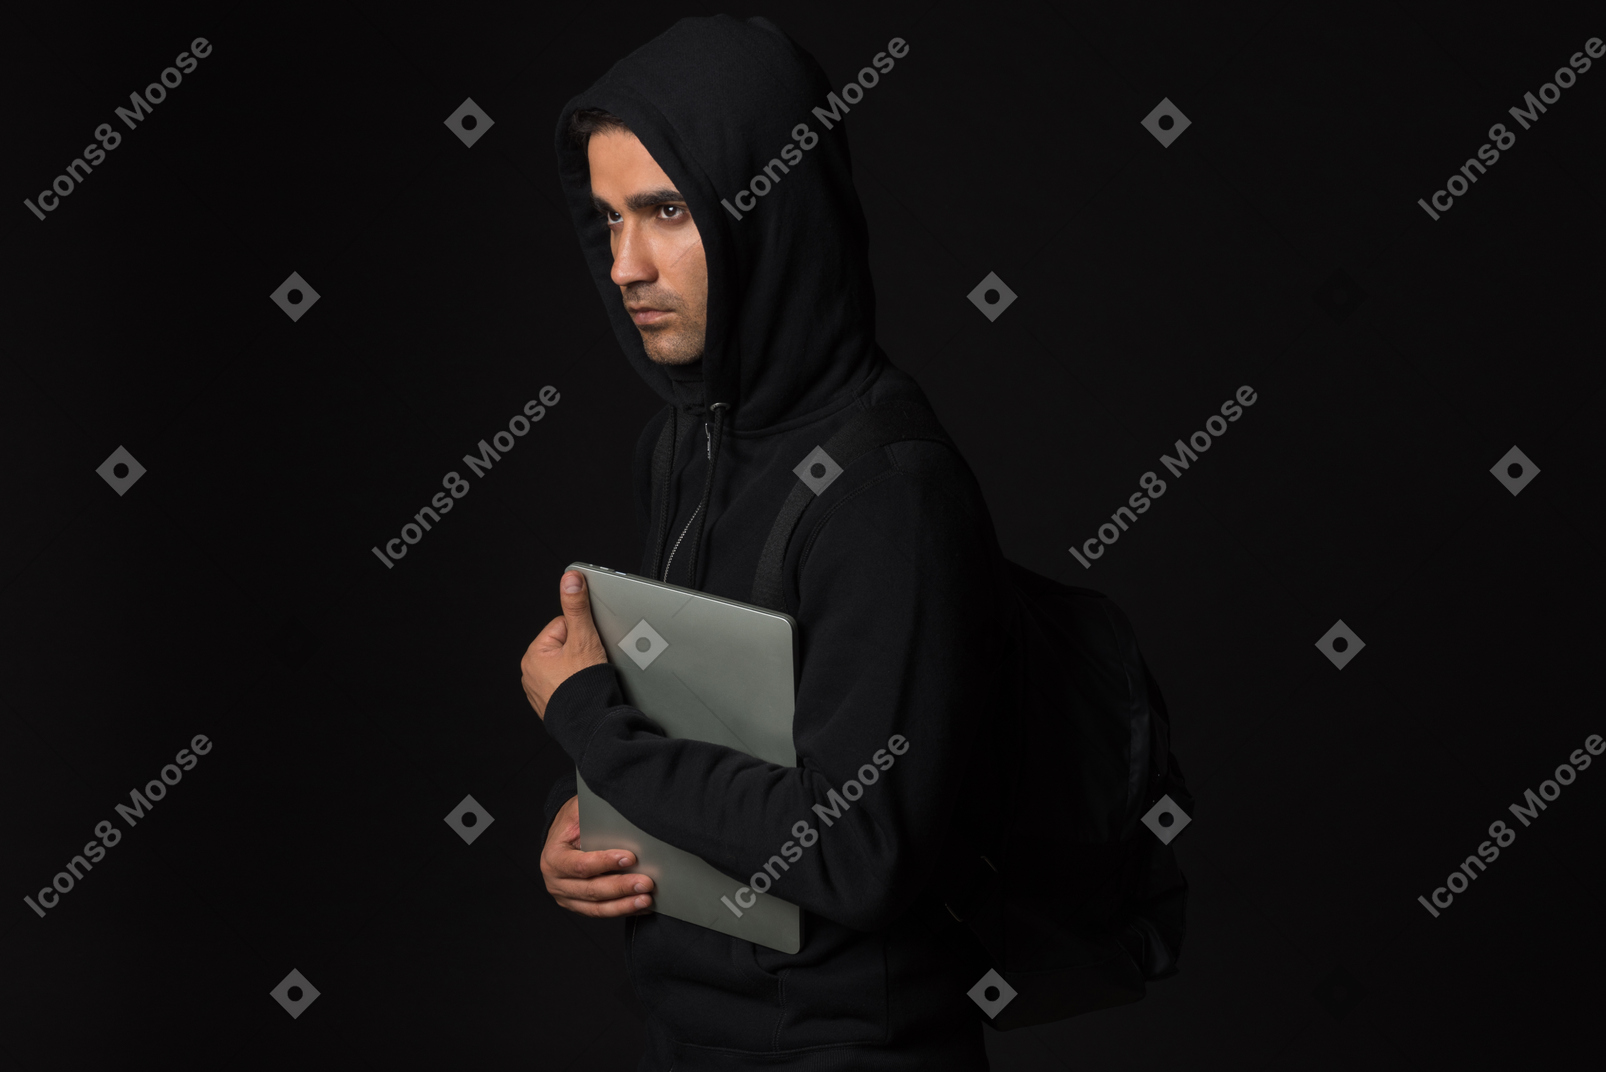 어둠 속에 서서 노트북을 들고 해커 남자